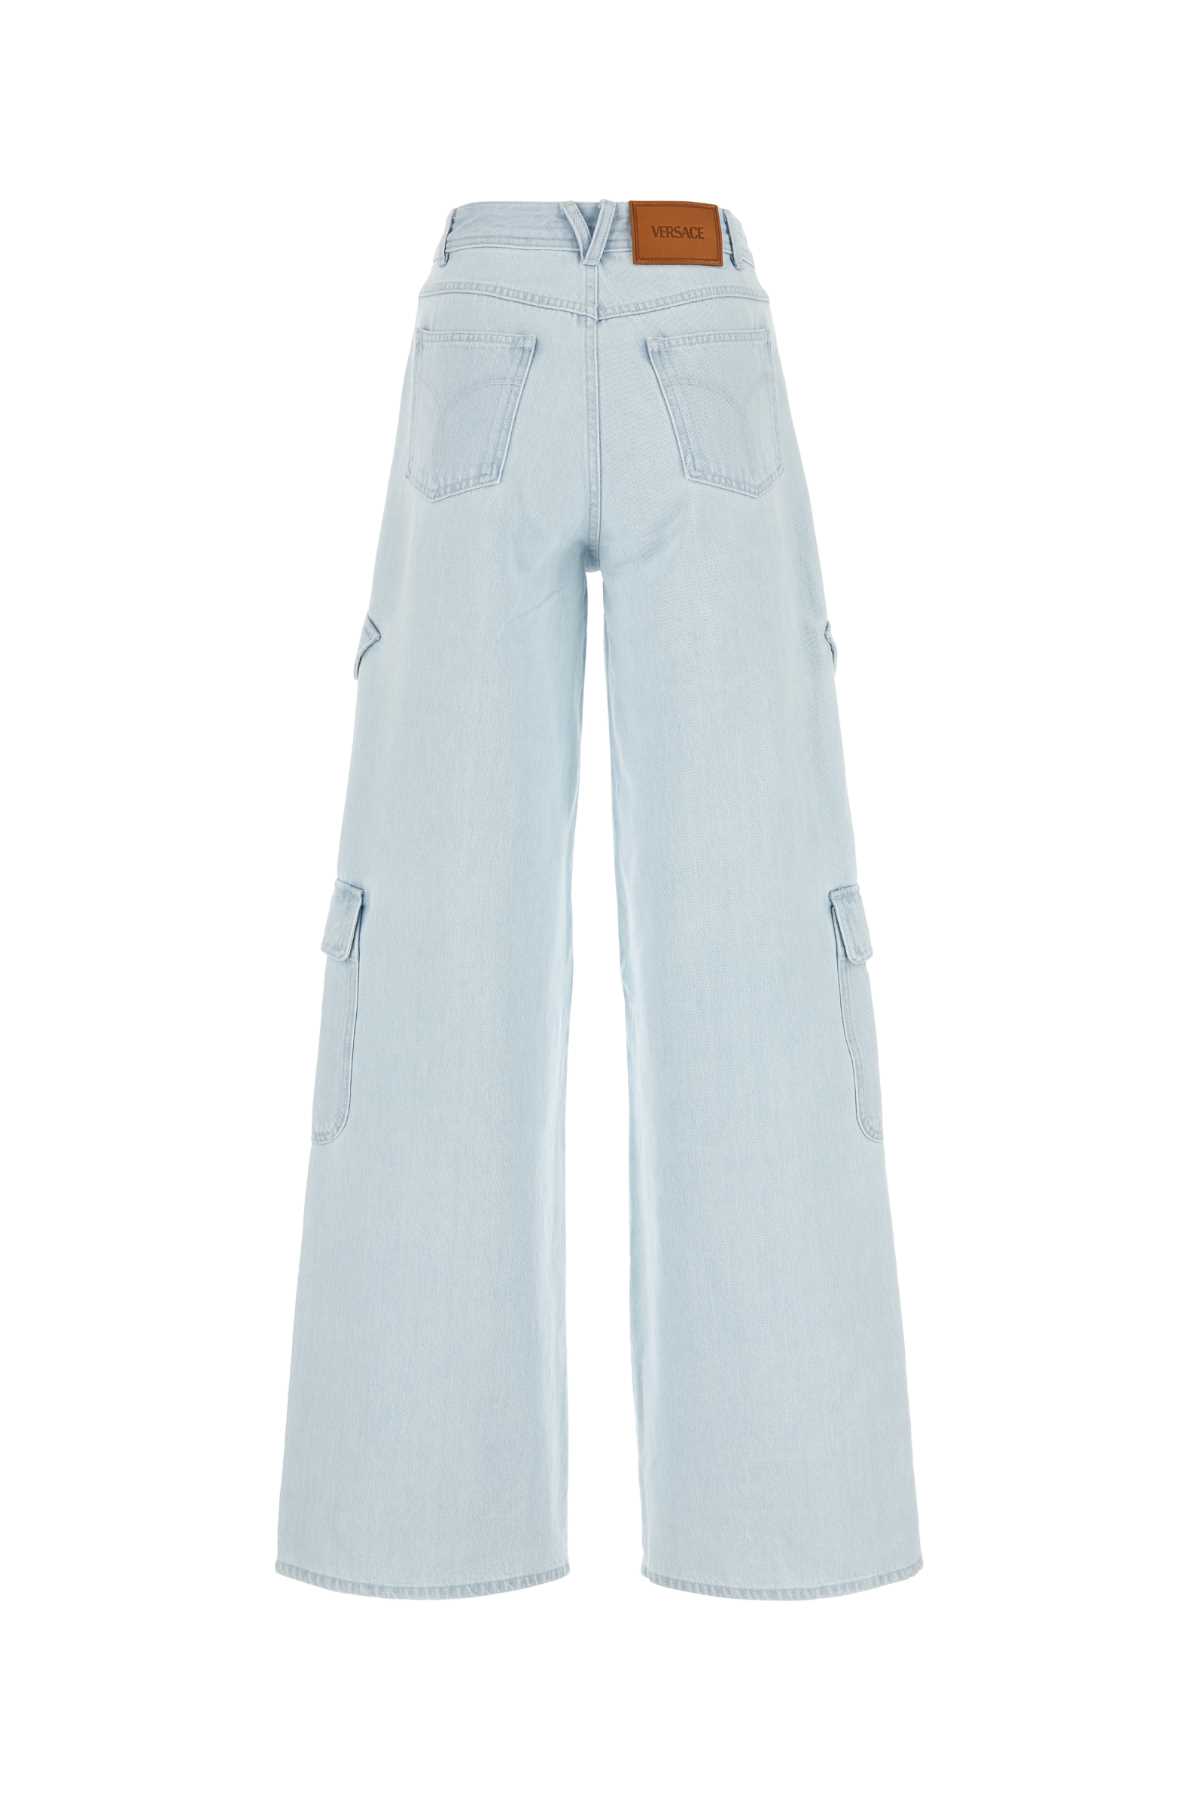 Versace Light Blue Denim Cargo Jeans In 1d700lightblueice